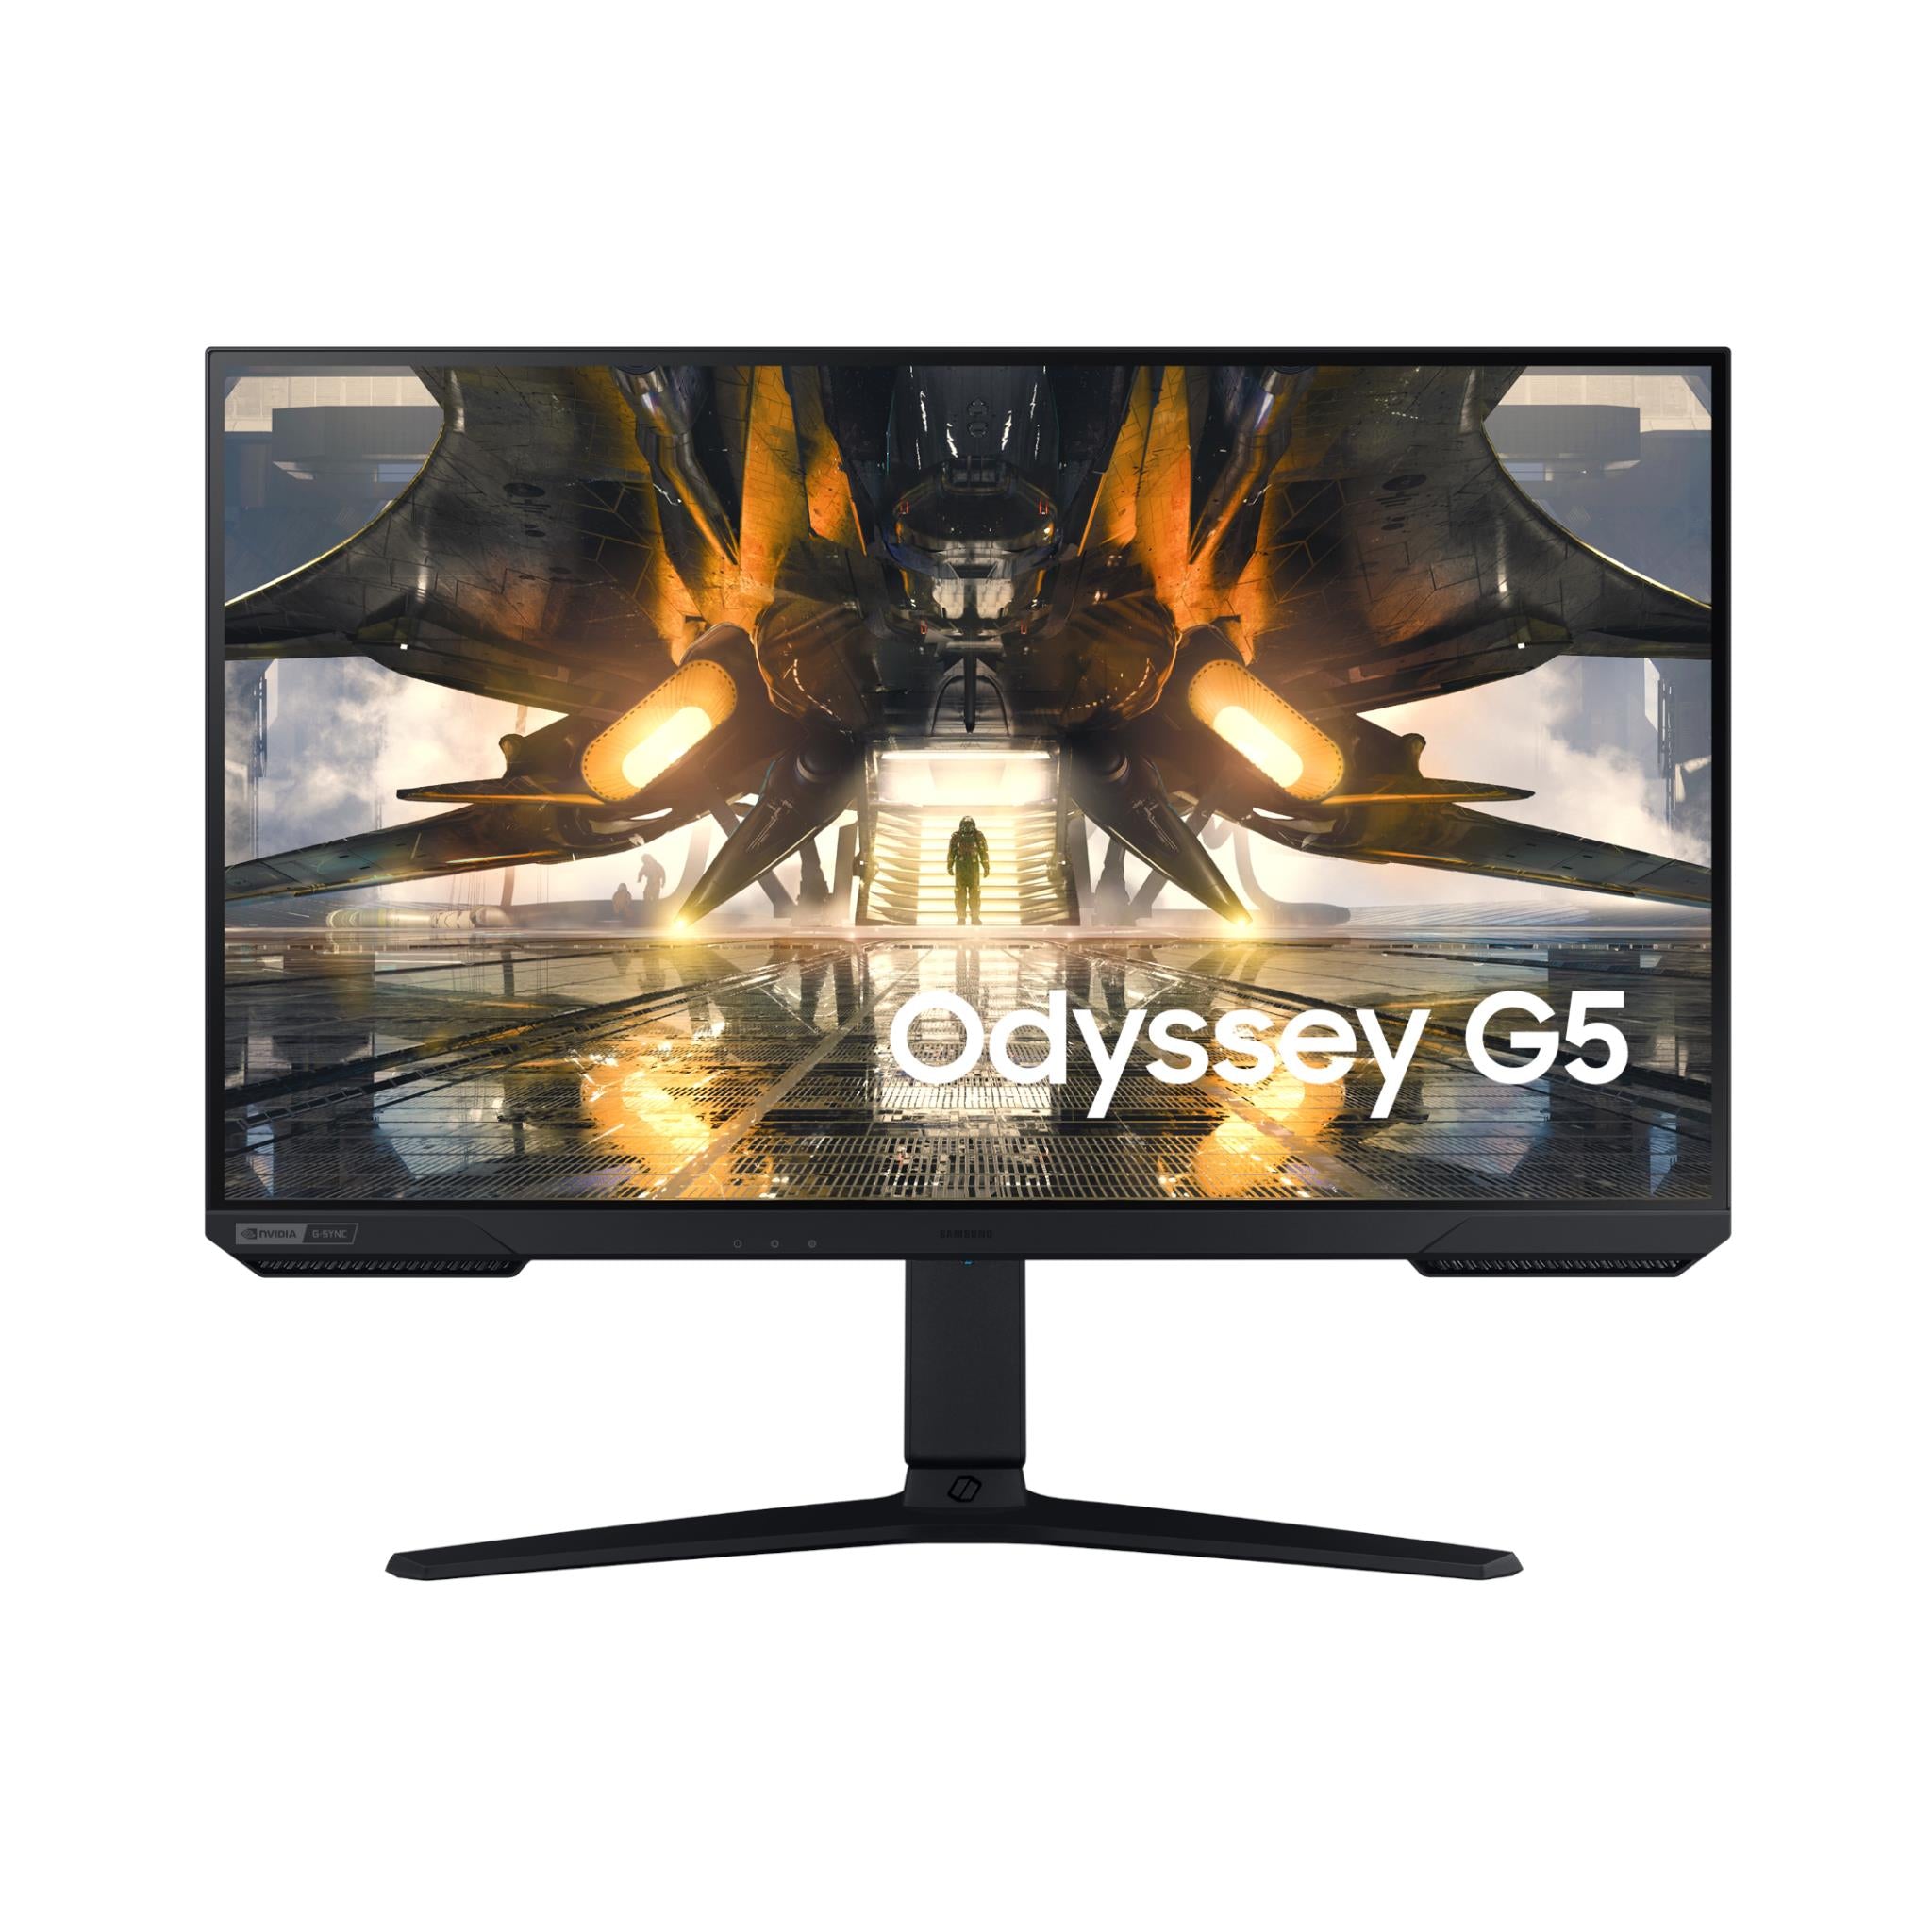 samsung odyssey g50a 27" qhd gaming monitor